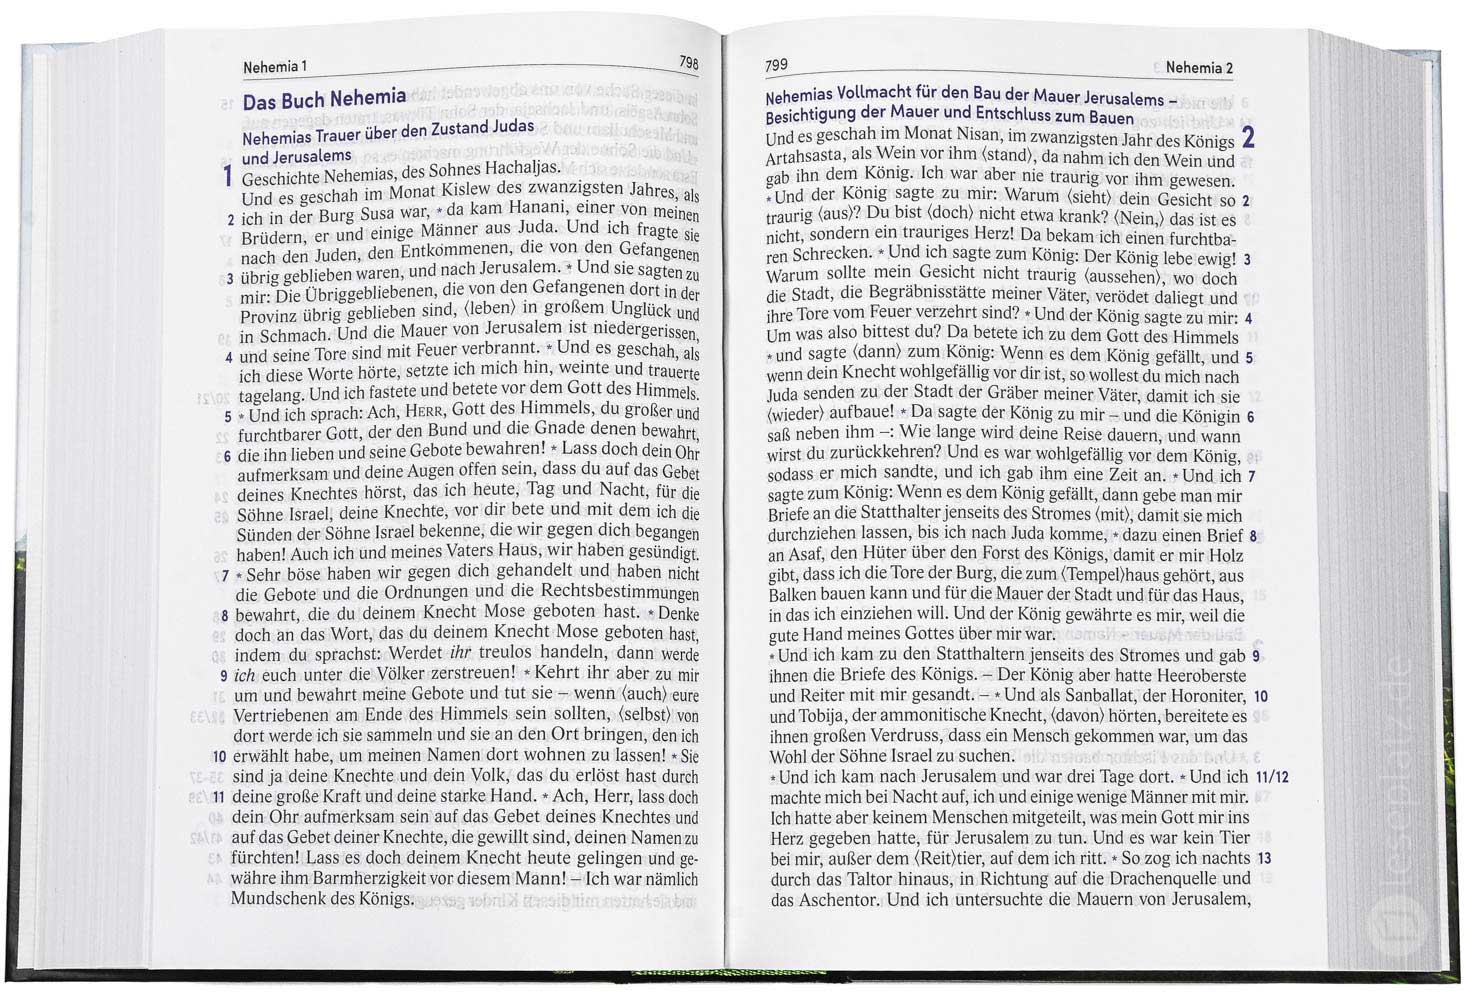 Elberfelder Bibel 2006 in großer Schrift - Hardcover / Motiv "Baum"